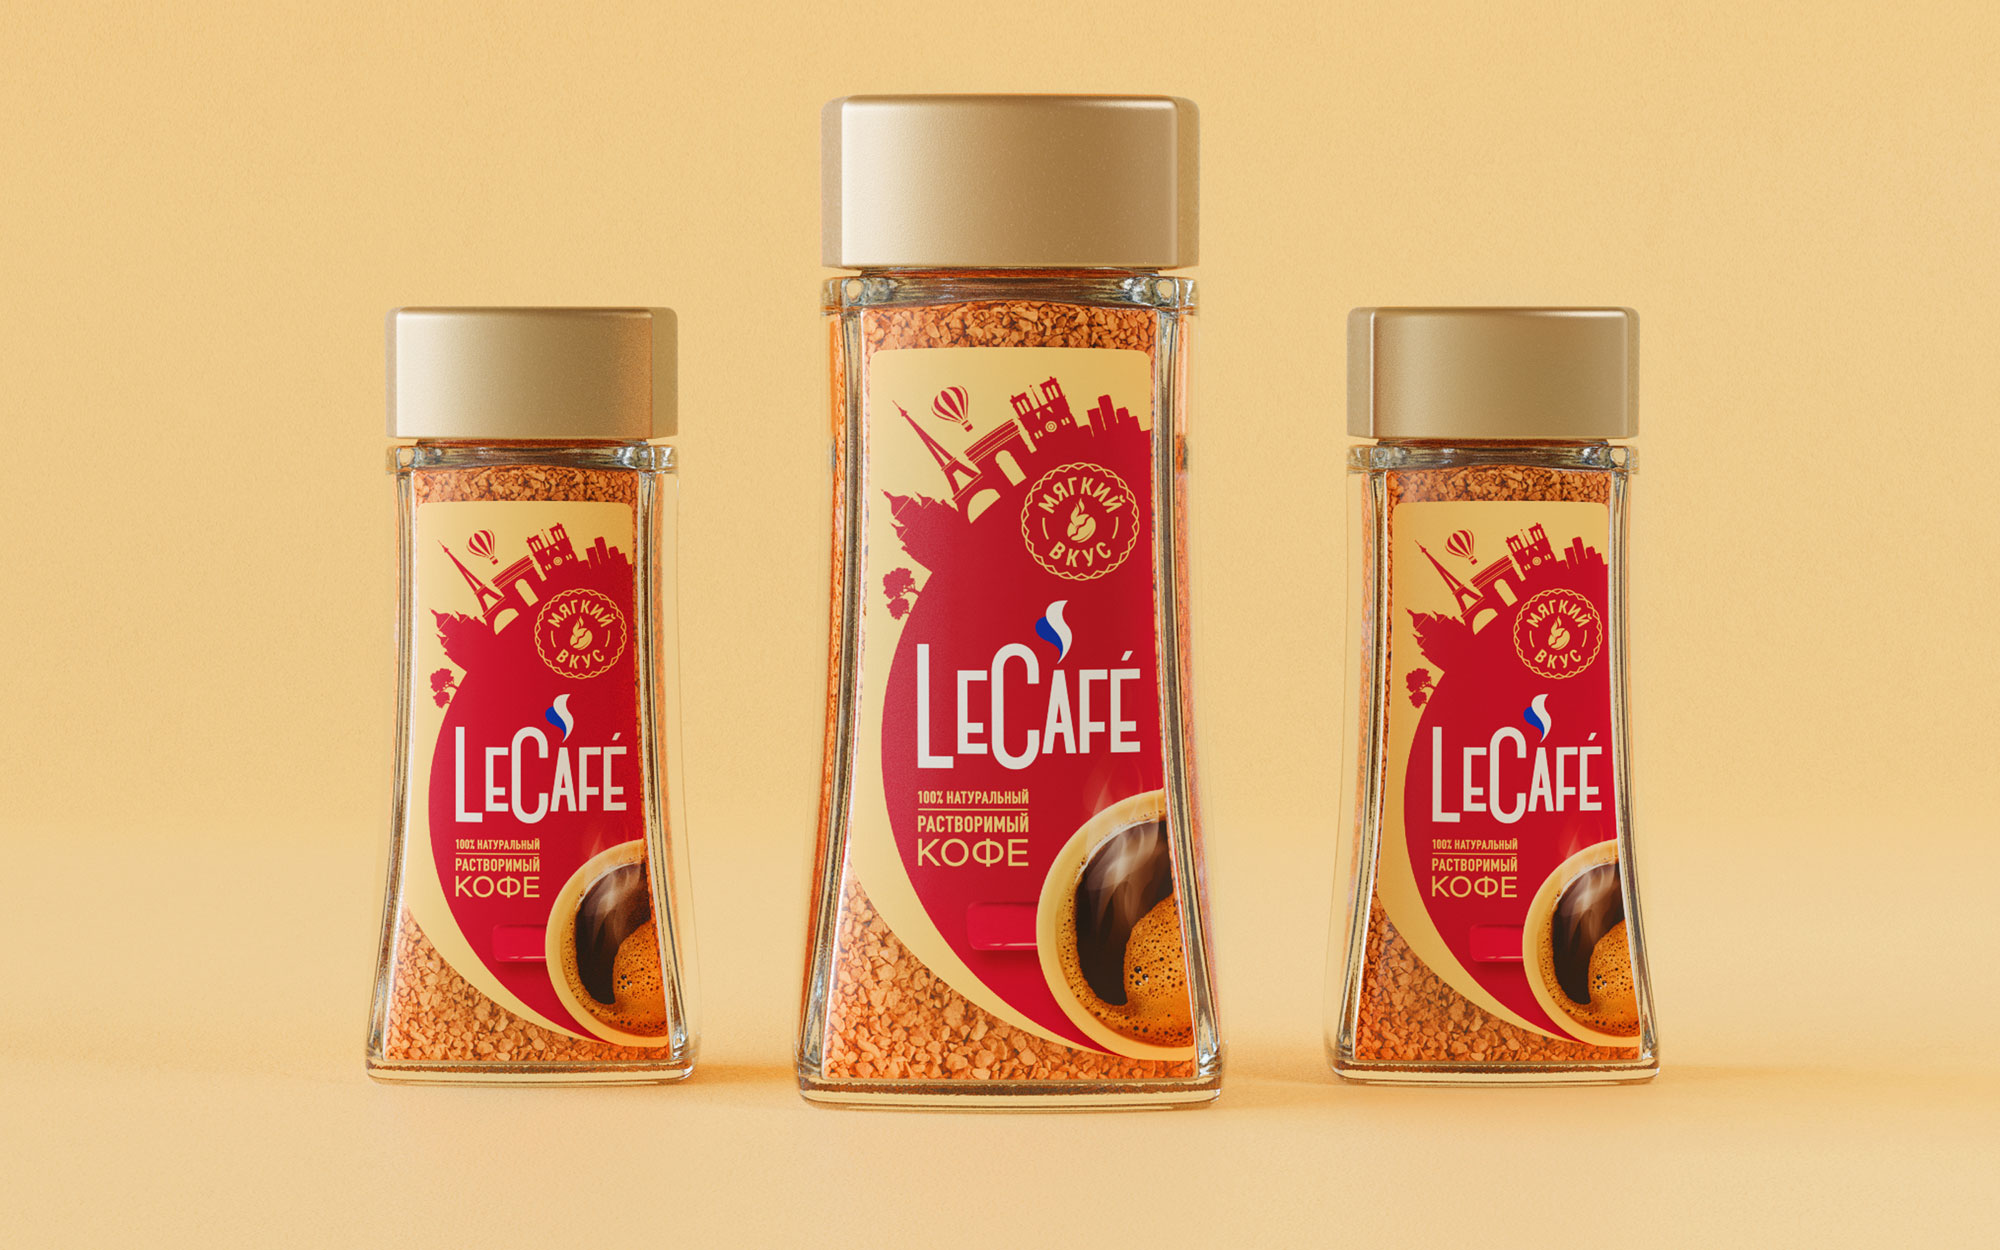 LeCafé 咖啡包装设计欣赏(图6)